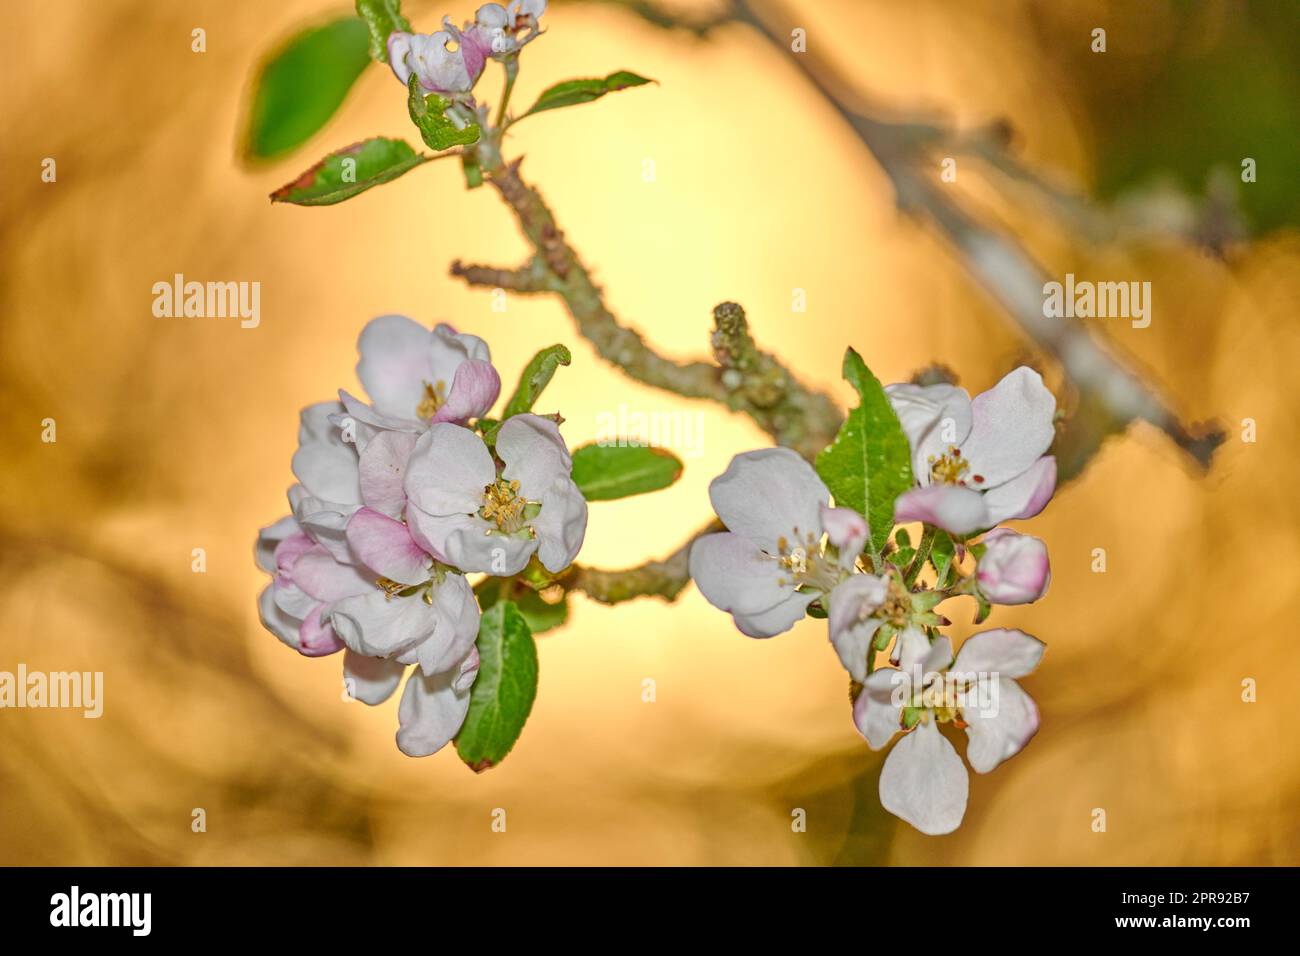 Gros plan d'une belle pomme de paradis fleurs sur un fond doré lumineux doux. Zoomez sur la nature qui fleurit sur une branche d'arbre dans un jardin. Détails macro de la beauté dans la nature apaisante Banque D'Images